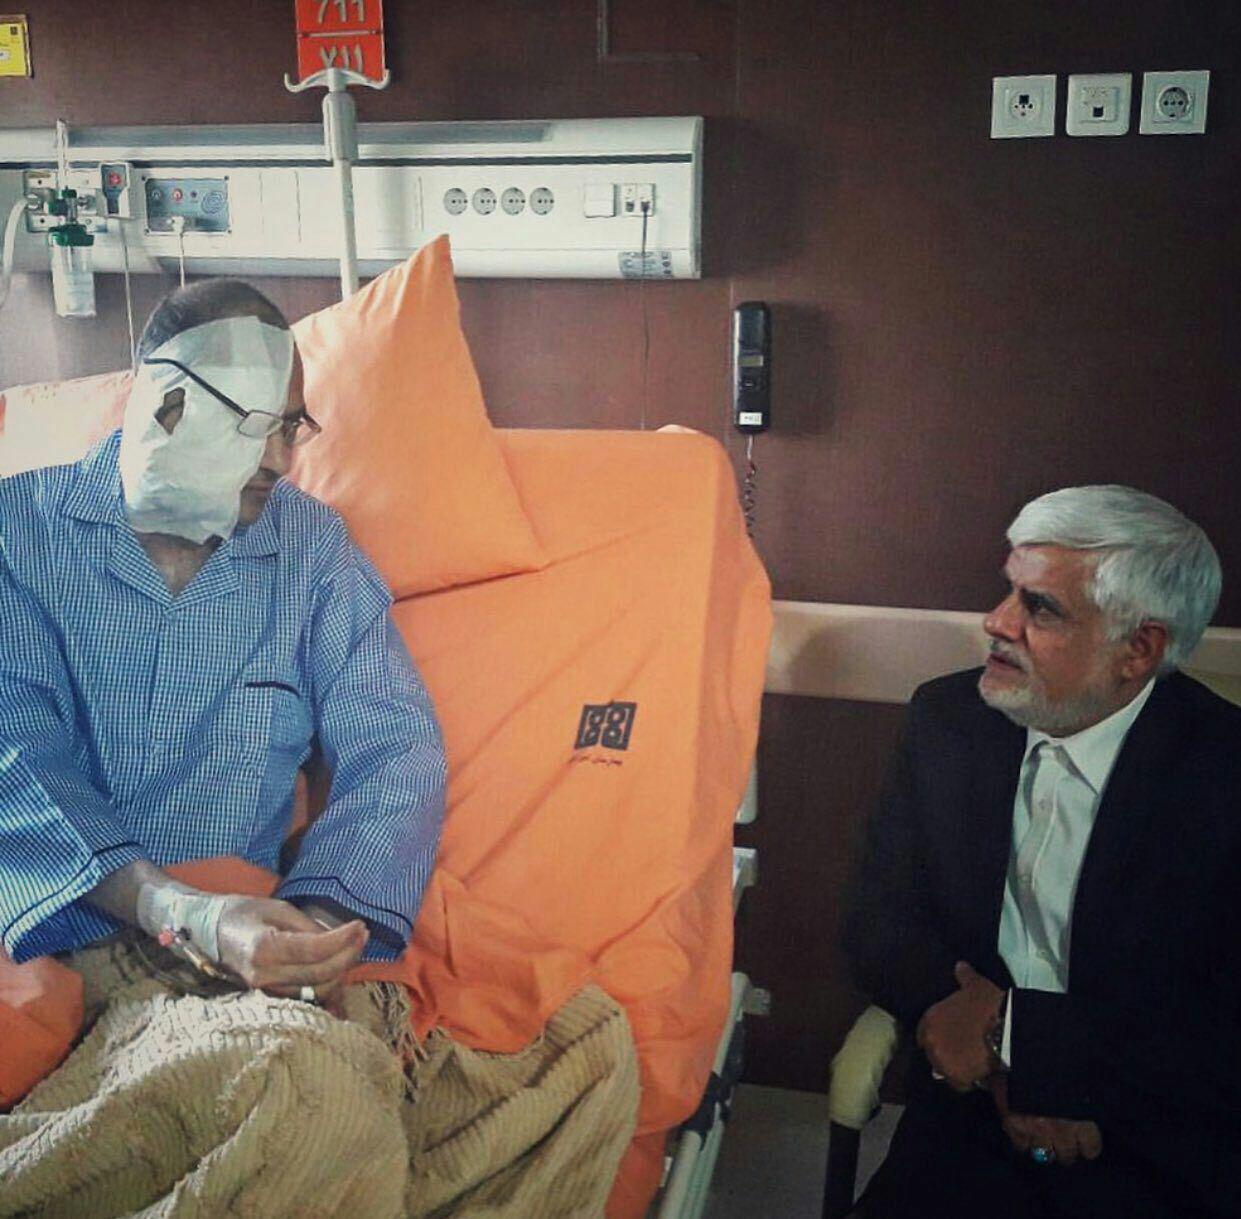 دیدار عارف با علیرضا رجایی در بیمارستان/عکس